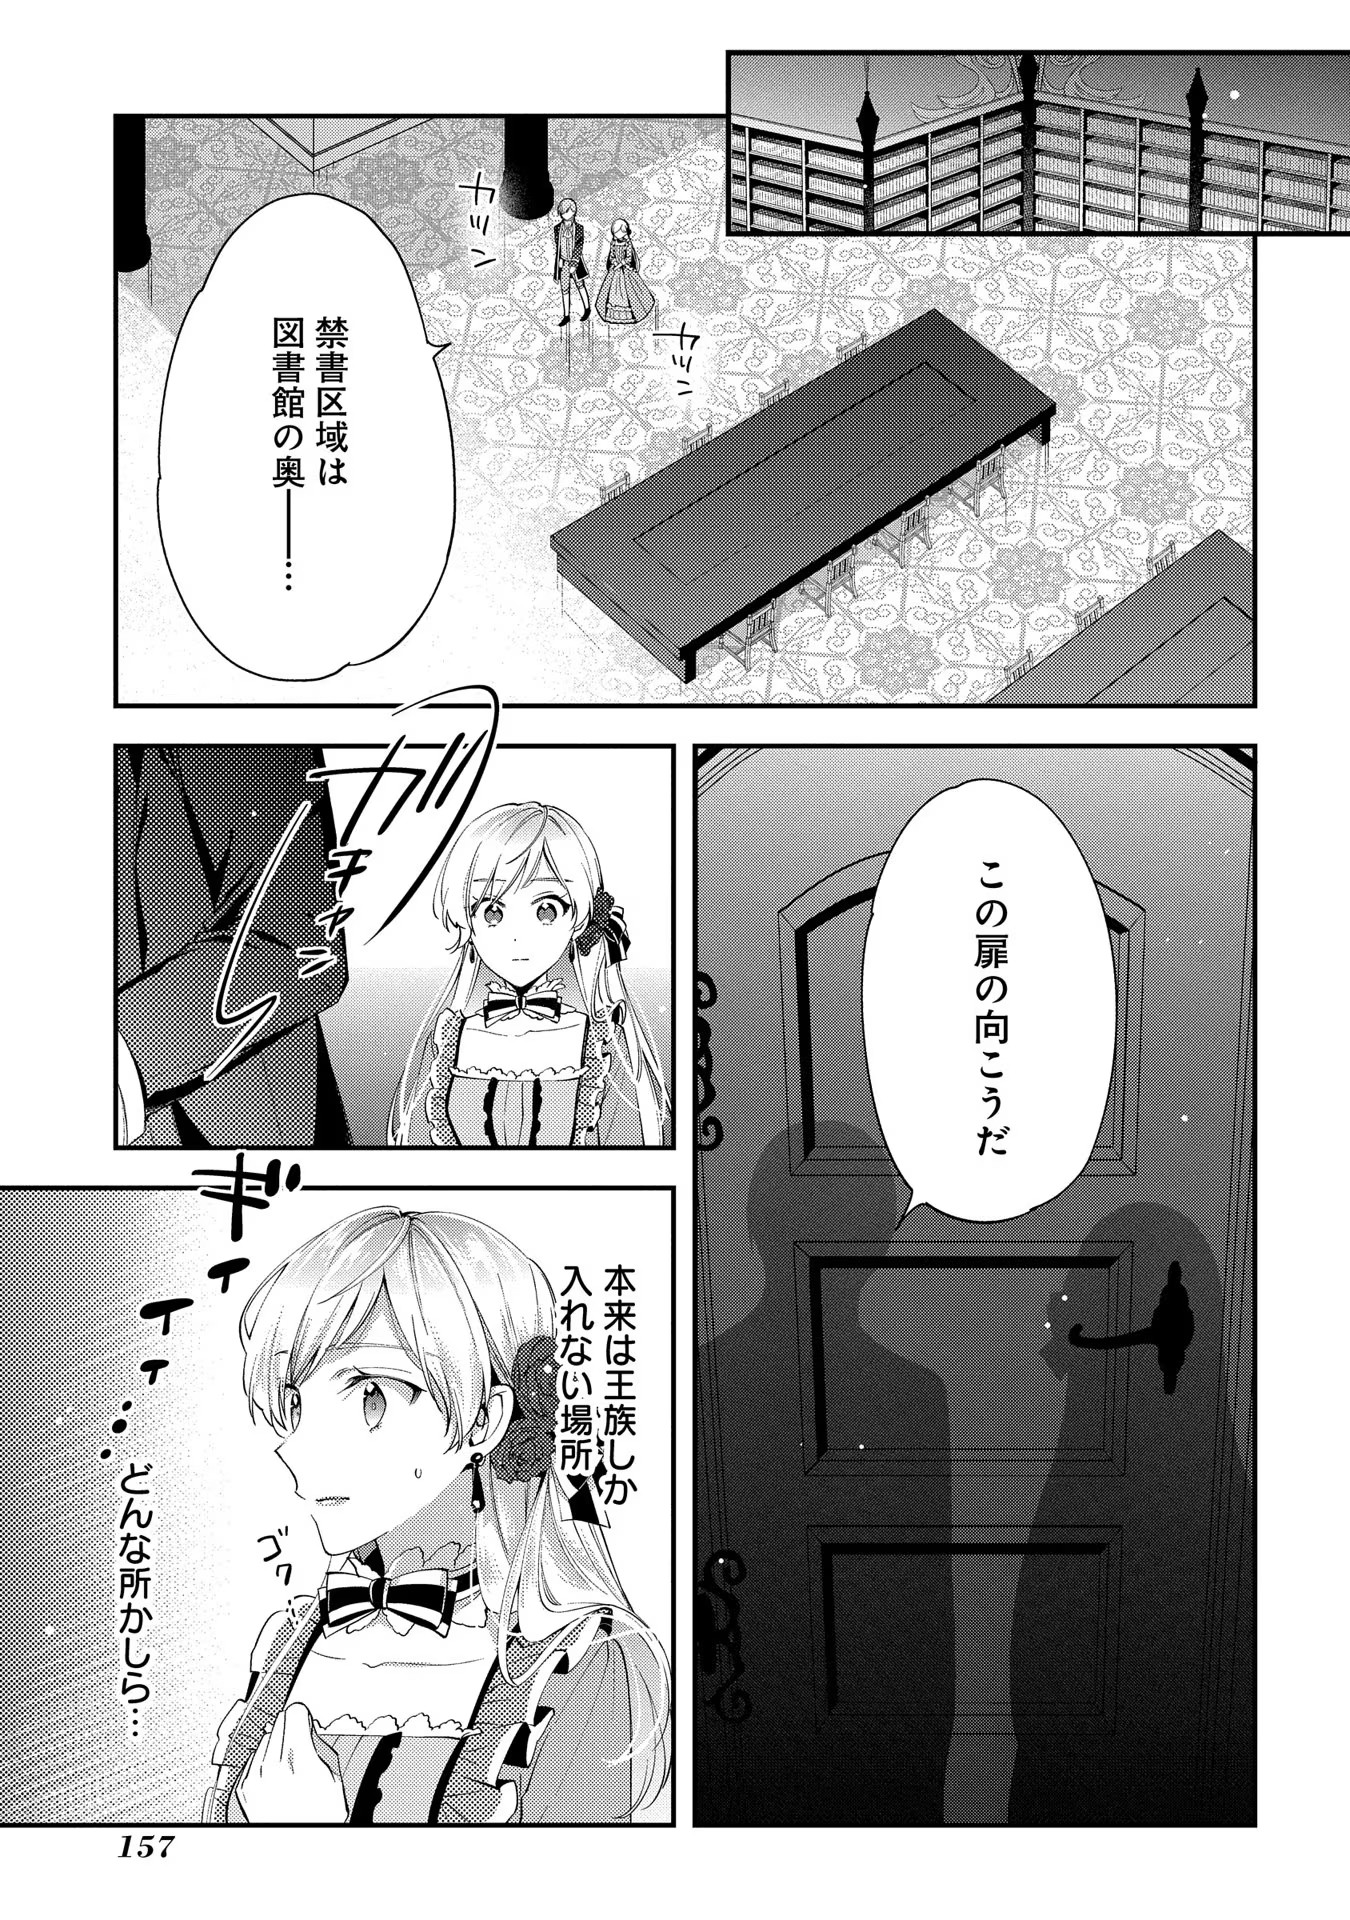 Outaishi ni Konyaku Hakisareta no de, Mou Baka no Furi wa Yameyou to Omoimasu - Chapter 5 - Page 19